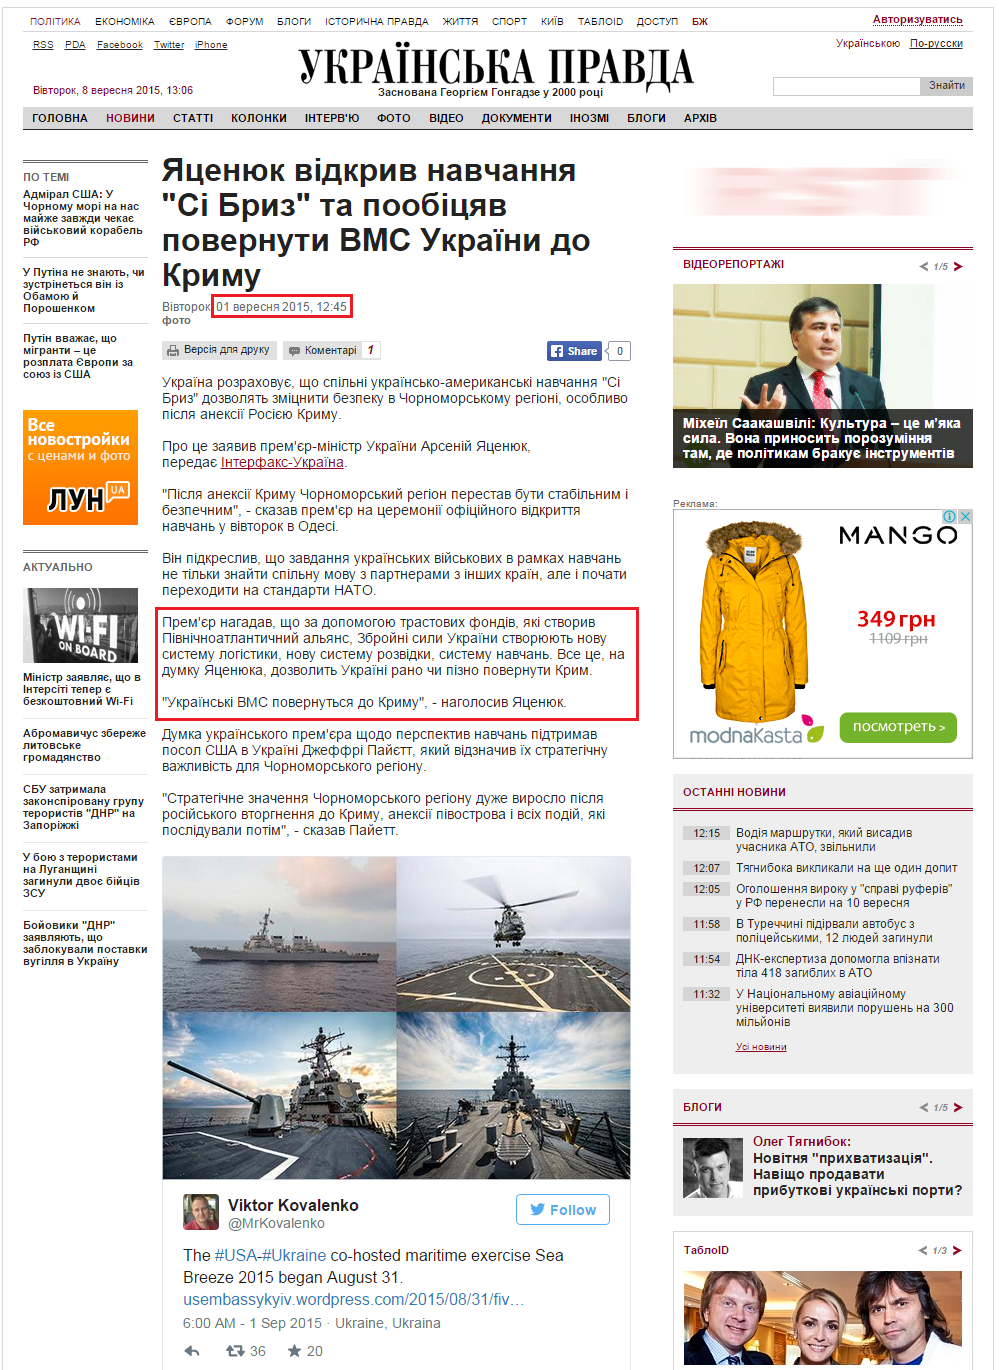 http://www.pravda.com.ua/news/2015/09/1/7079743/